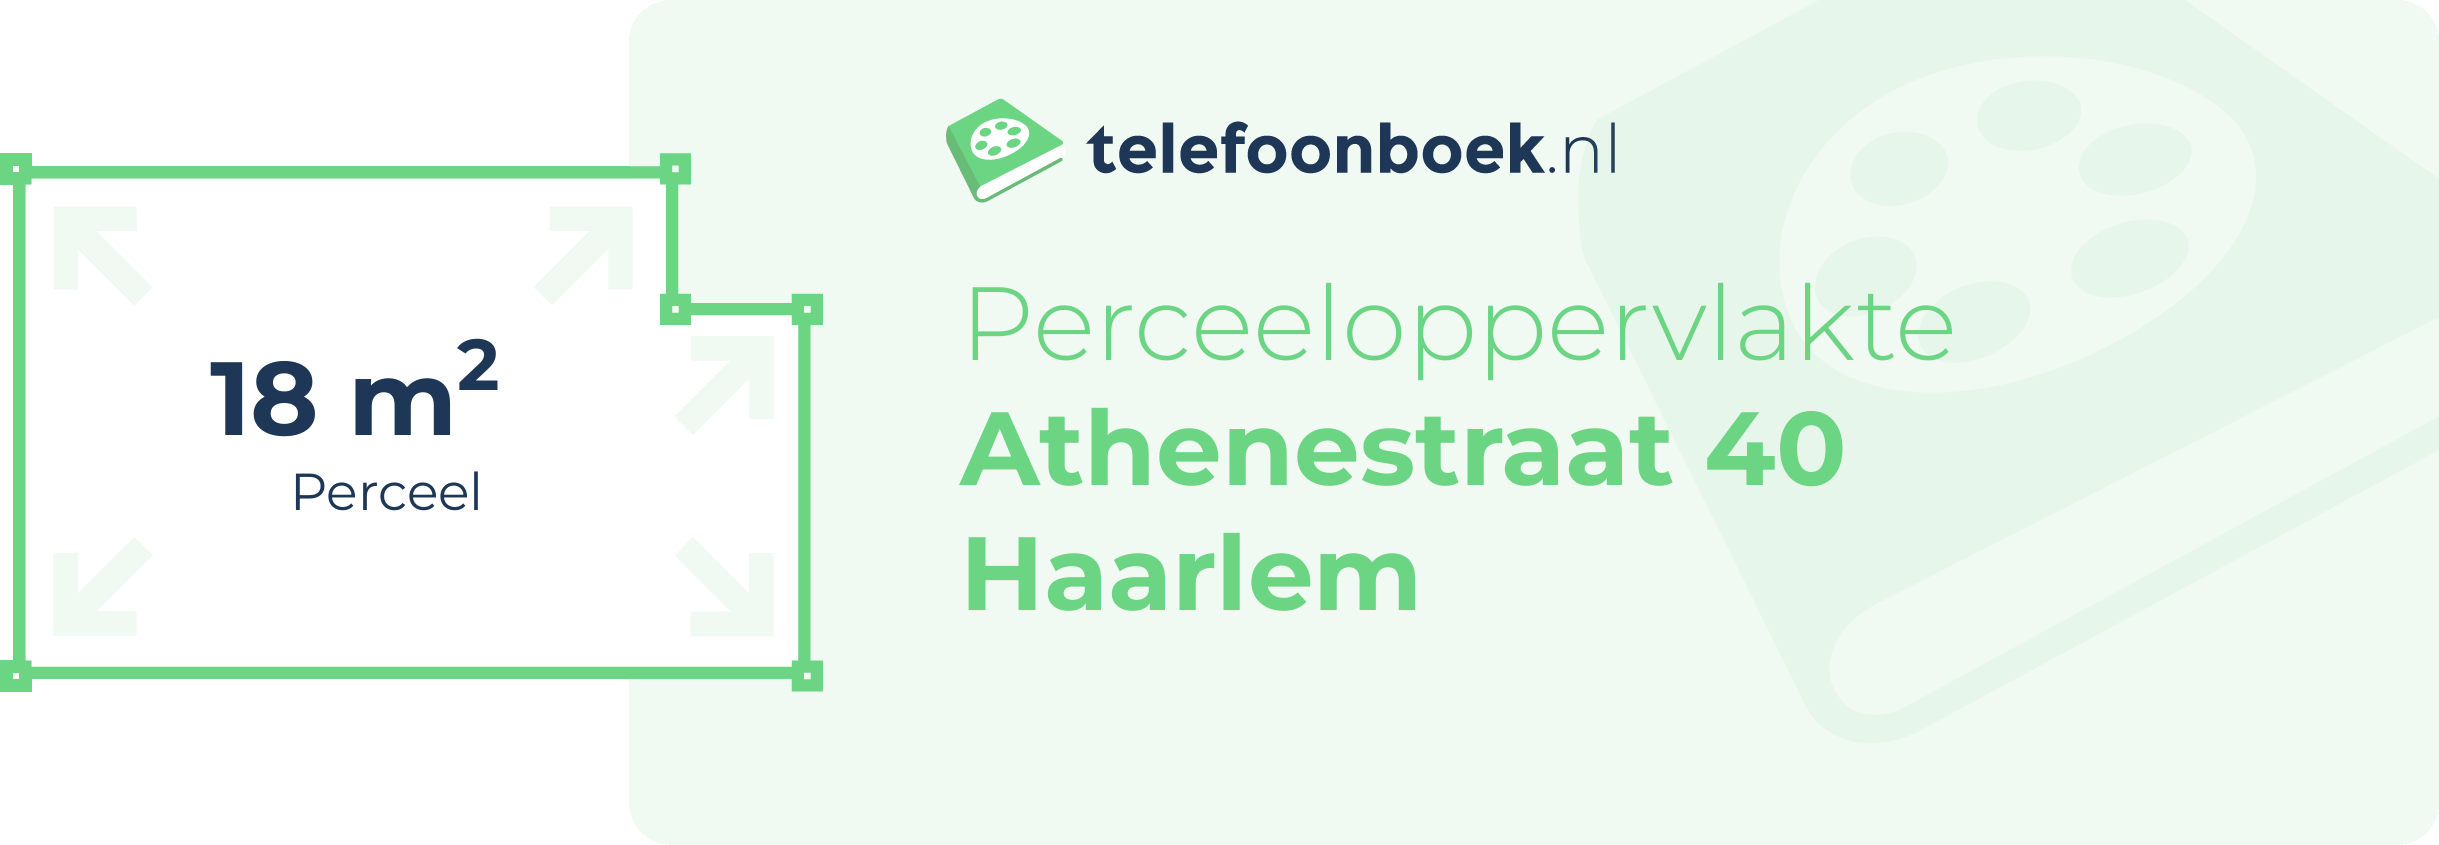 Perceeloppervlakte Athenestraat 40 Haarlem